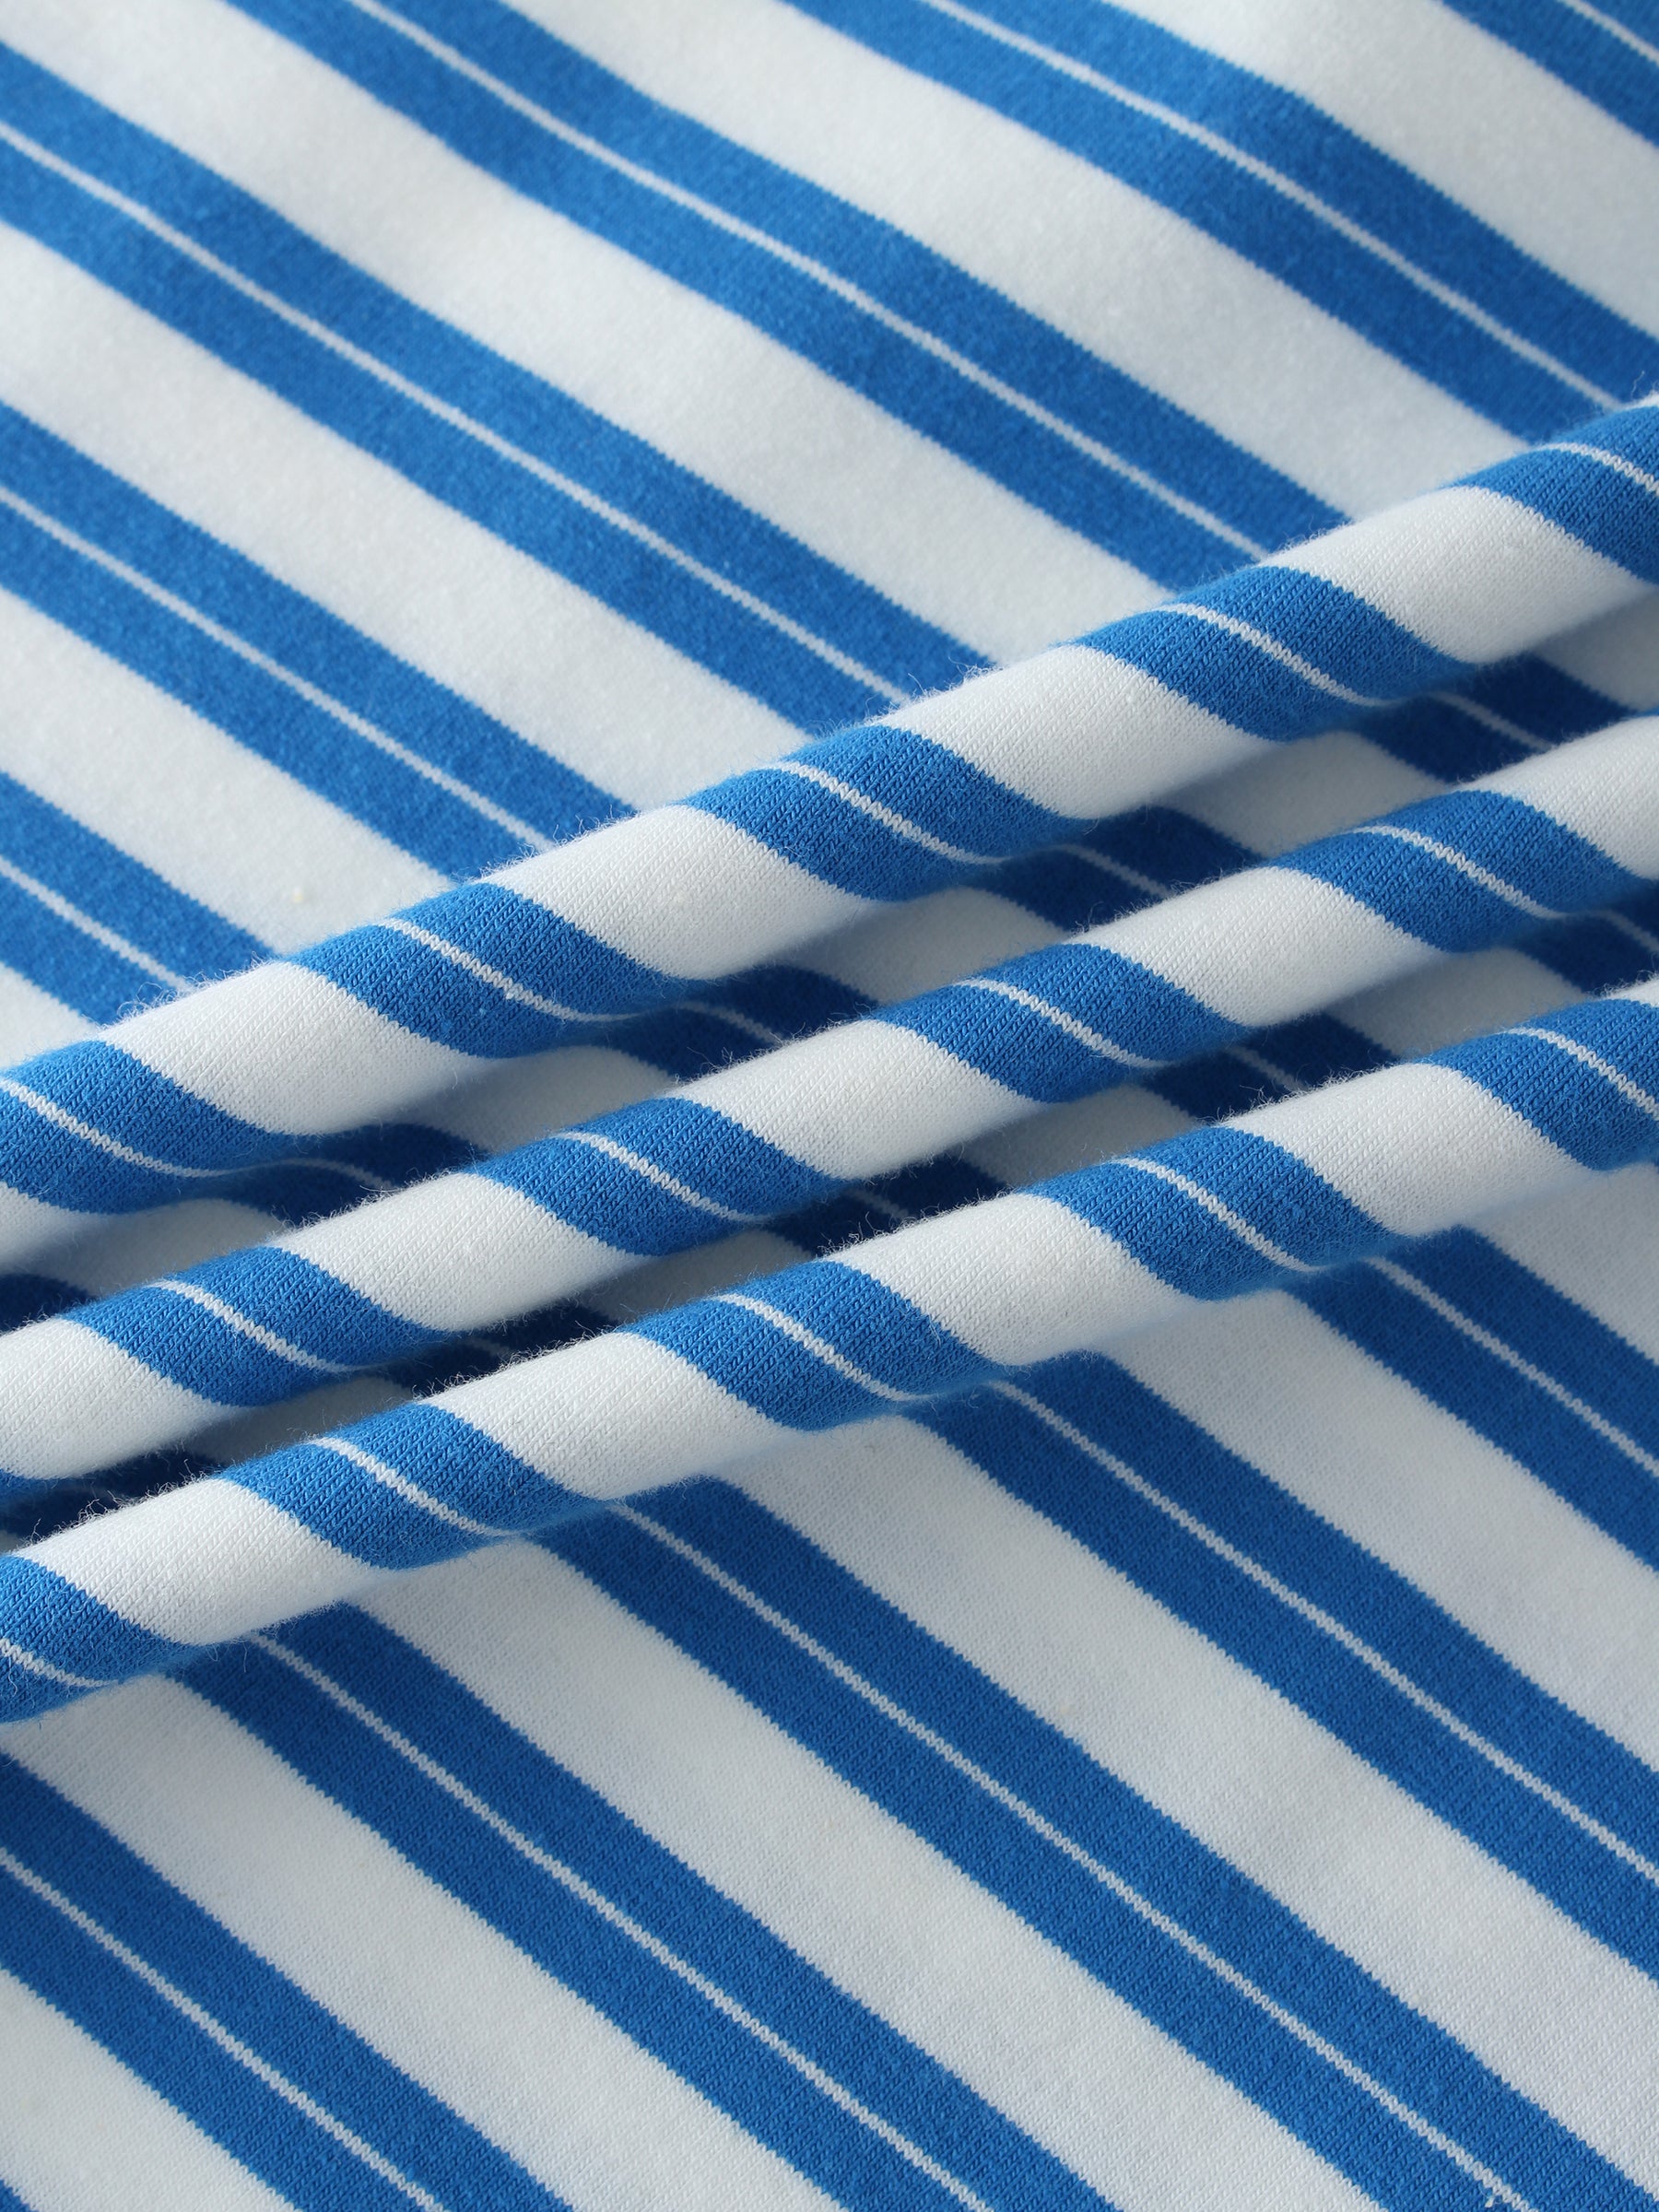 Striped Boxy Tee-Blue/White